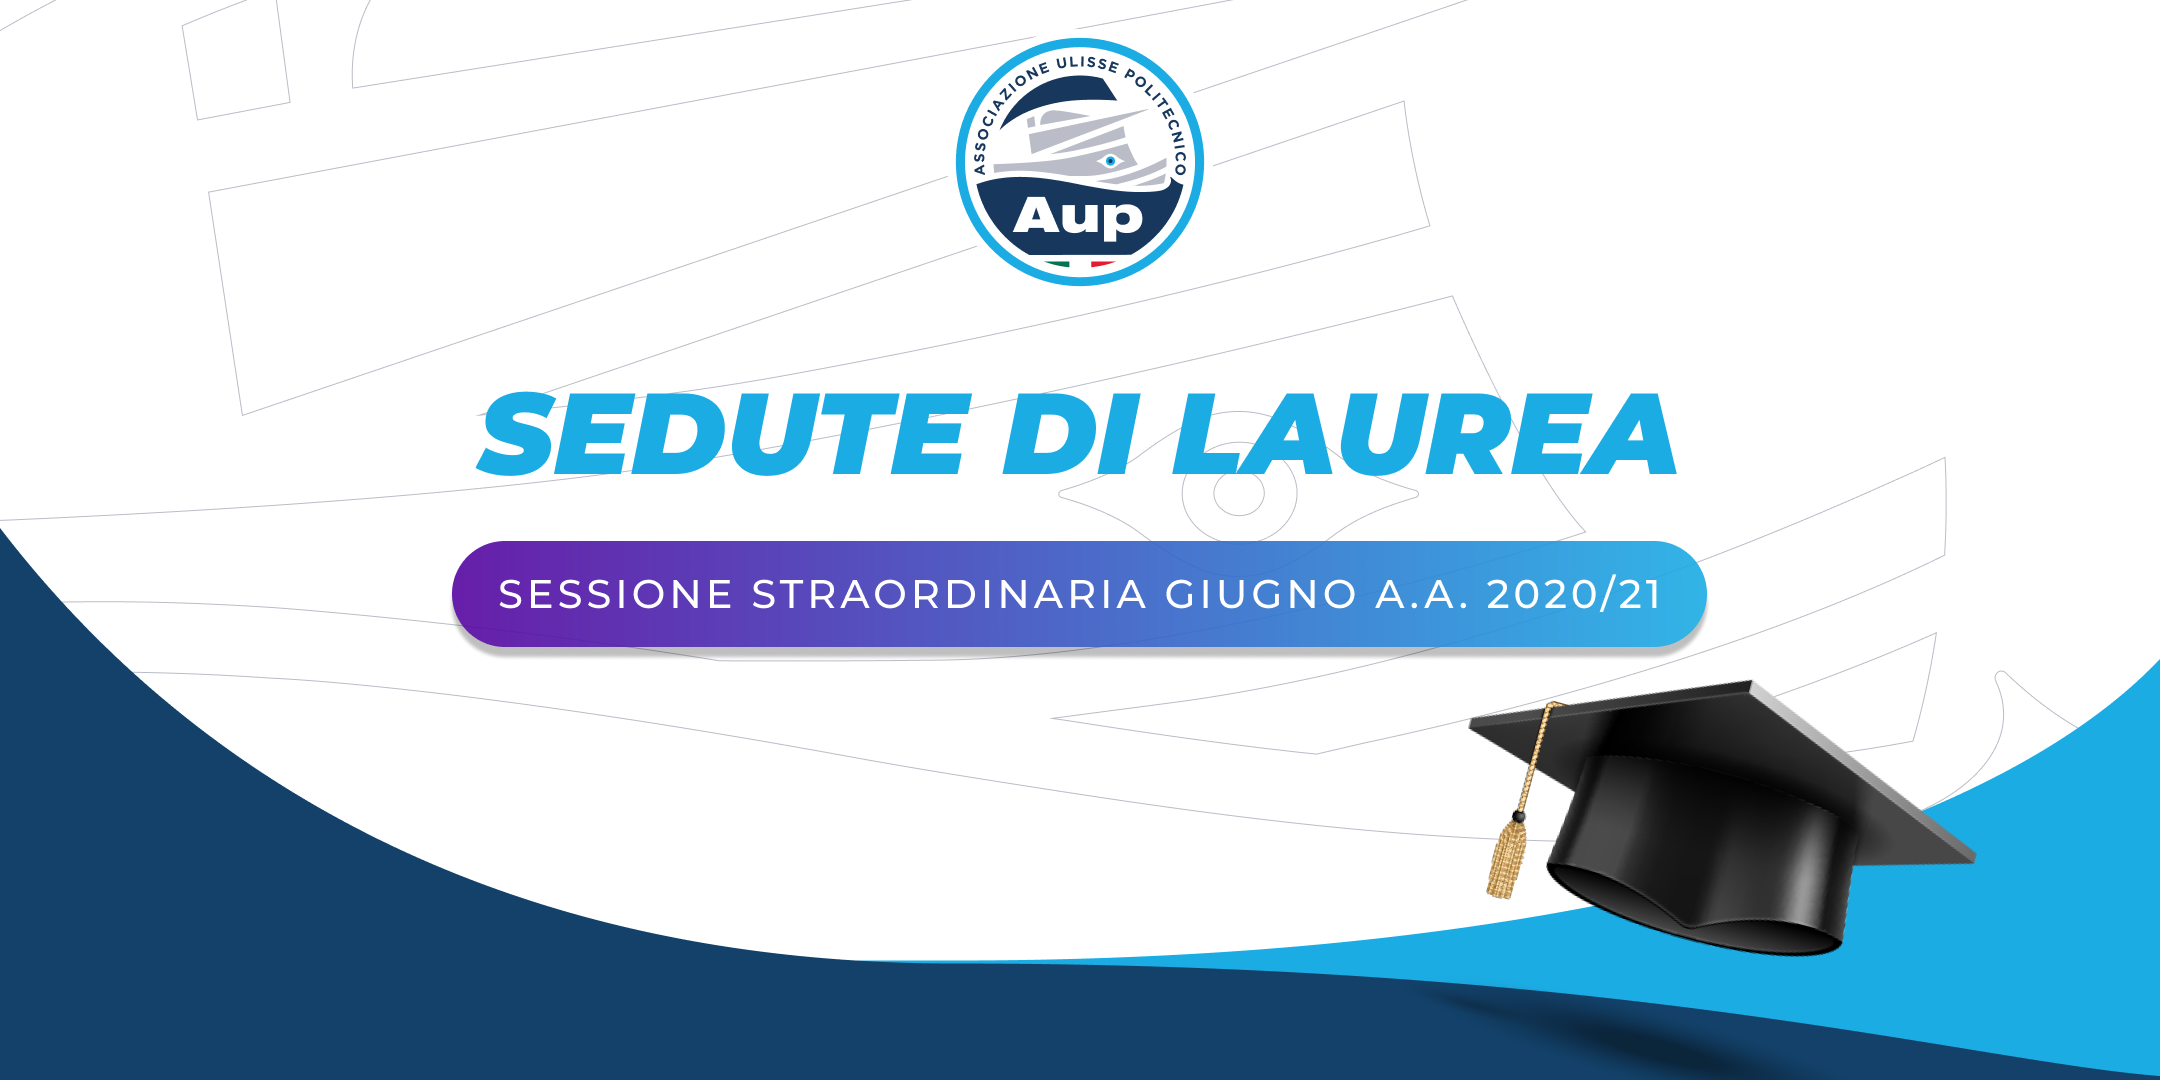 Proroga anno accademico | Seduta di Laurea straordinaria giugno a.a. 2020/2021